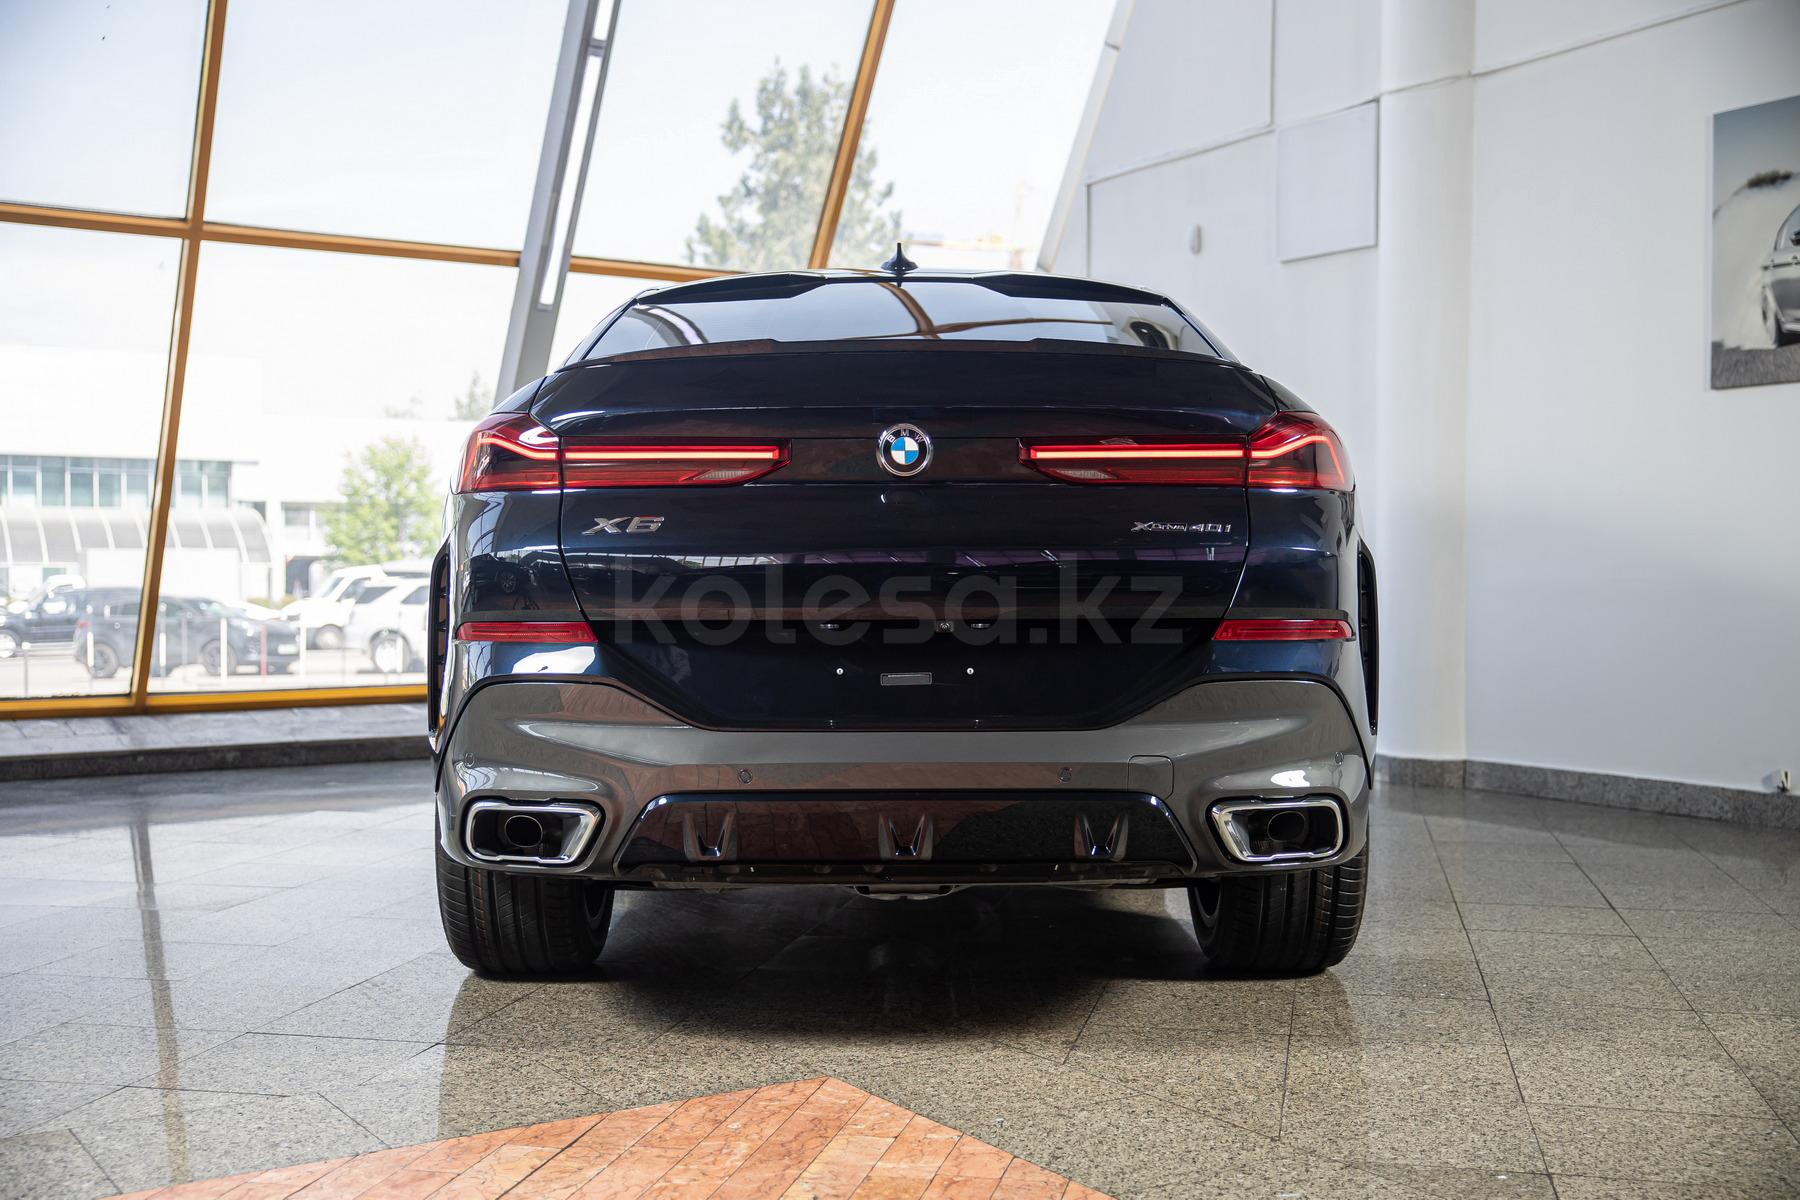 BMW X6 J 2021 года от 71 772 764 тенге